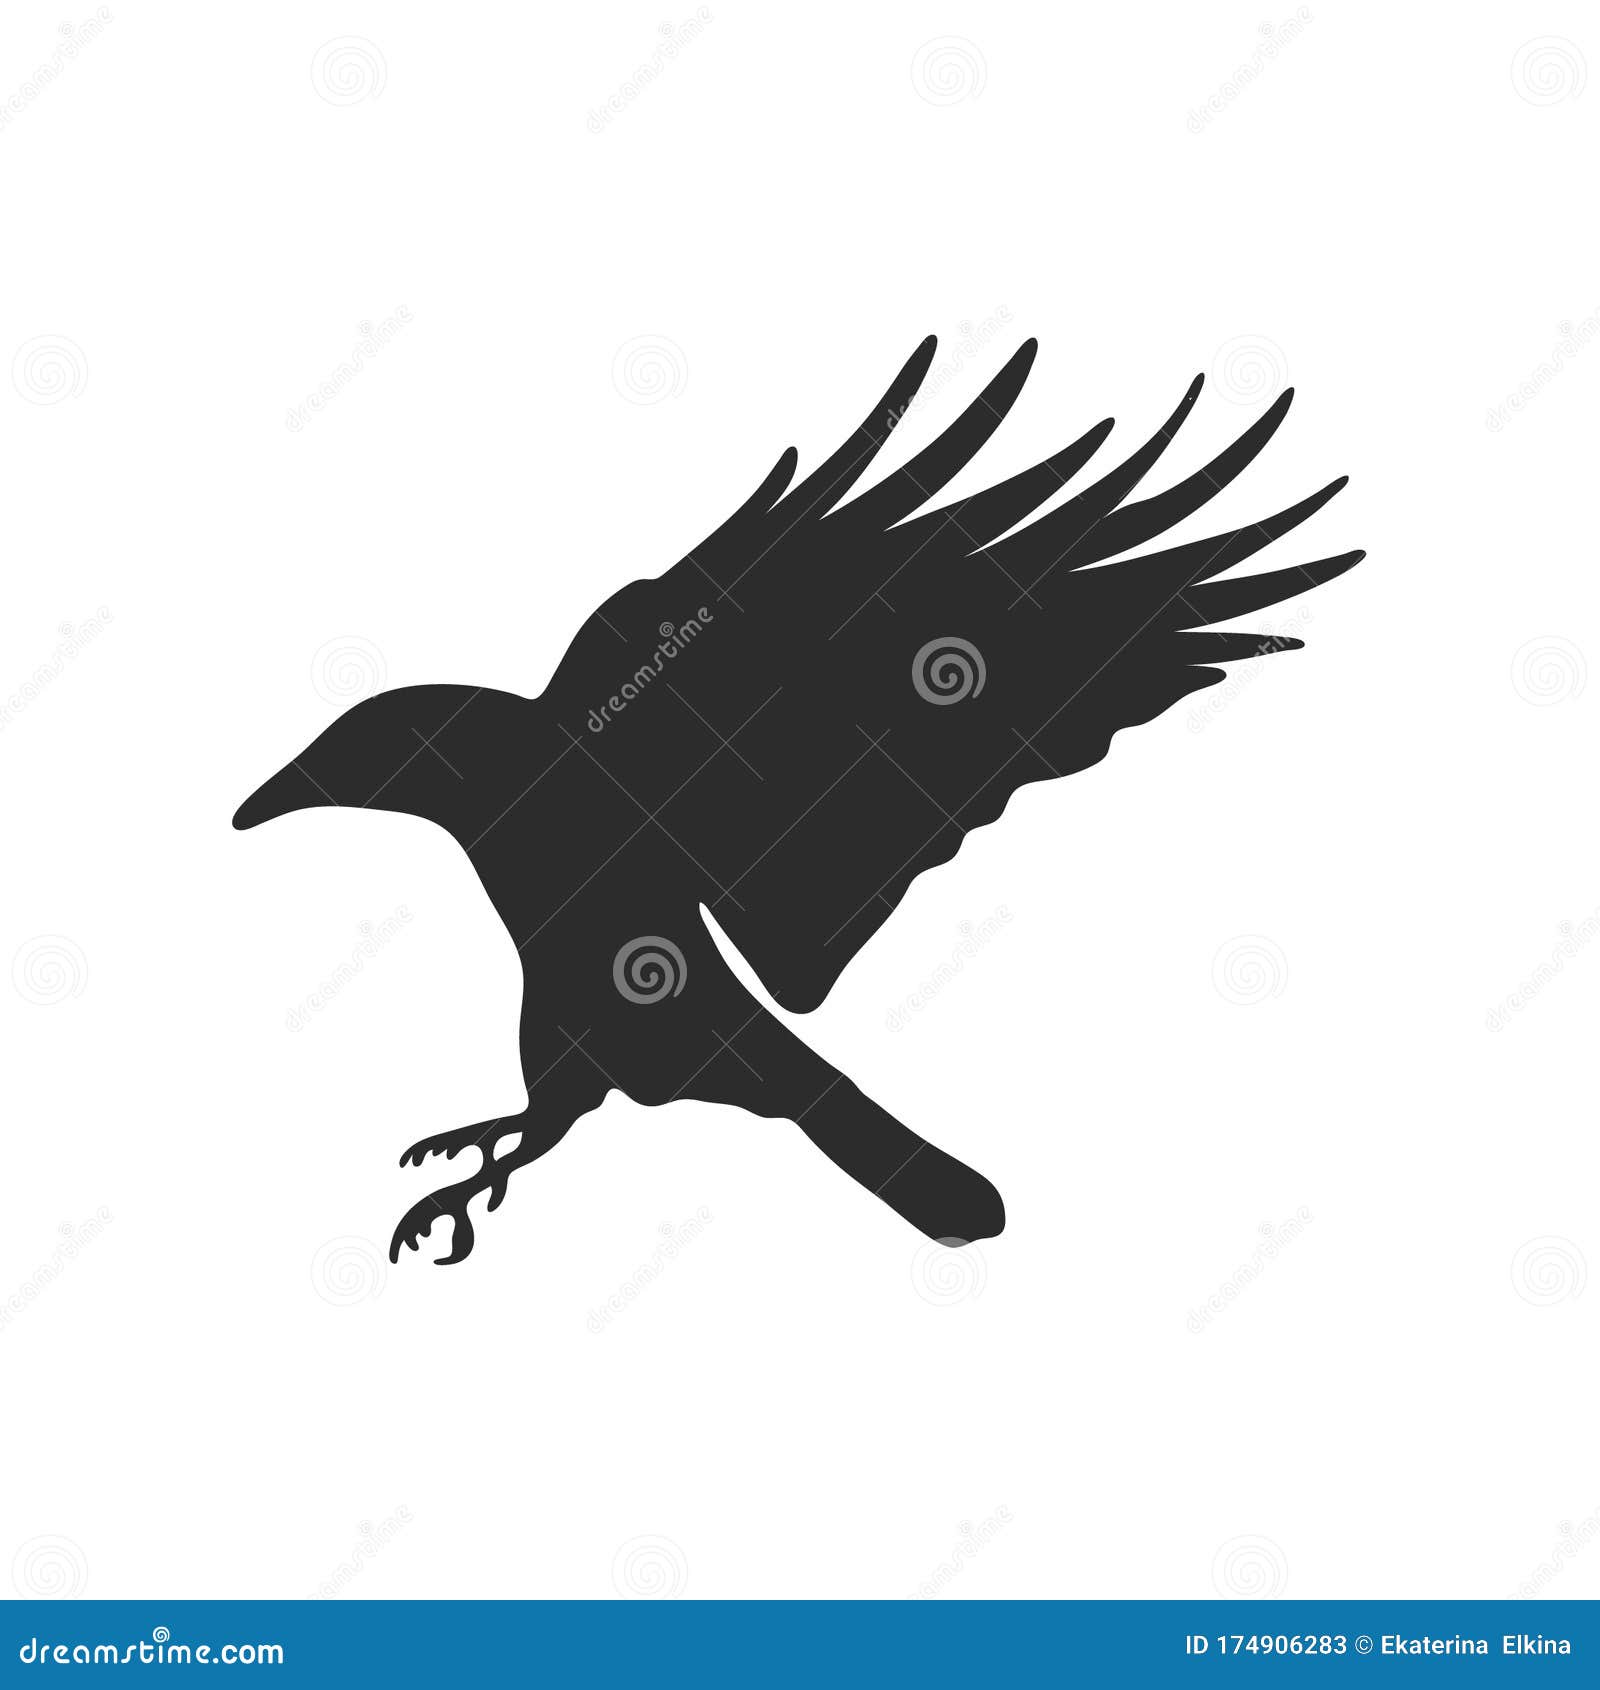 Crows Ravens Raven Tattoo Ideas Bird Stencil Crow Tattoo Ideas Black  Birds Blackbird Tattoo Raven Outline Fly  Black bird tattoo Crow  tattoo Bird stencil